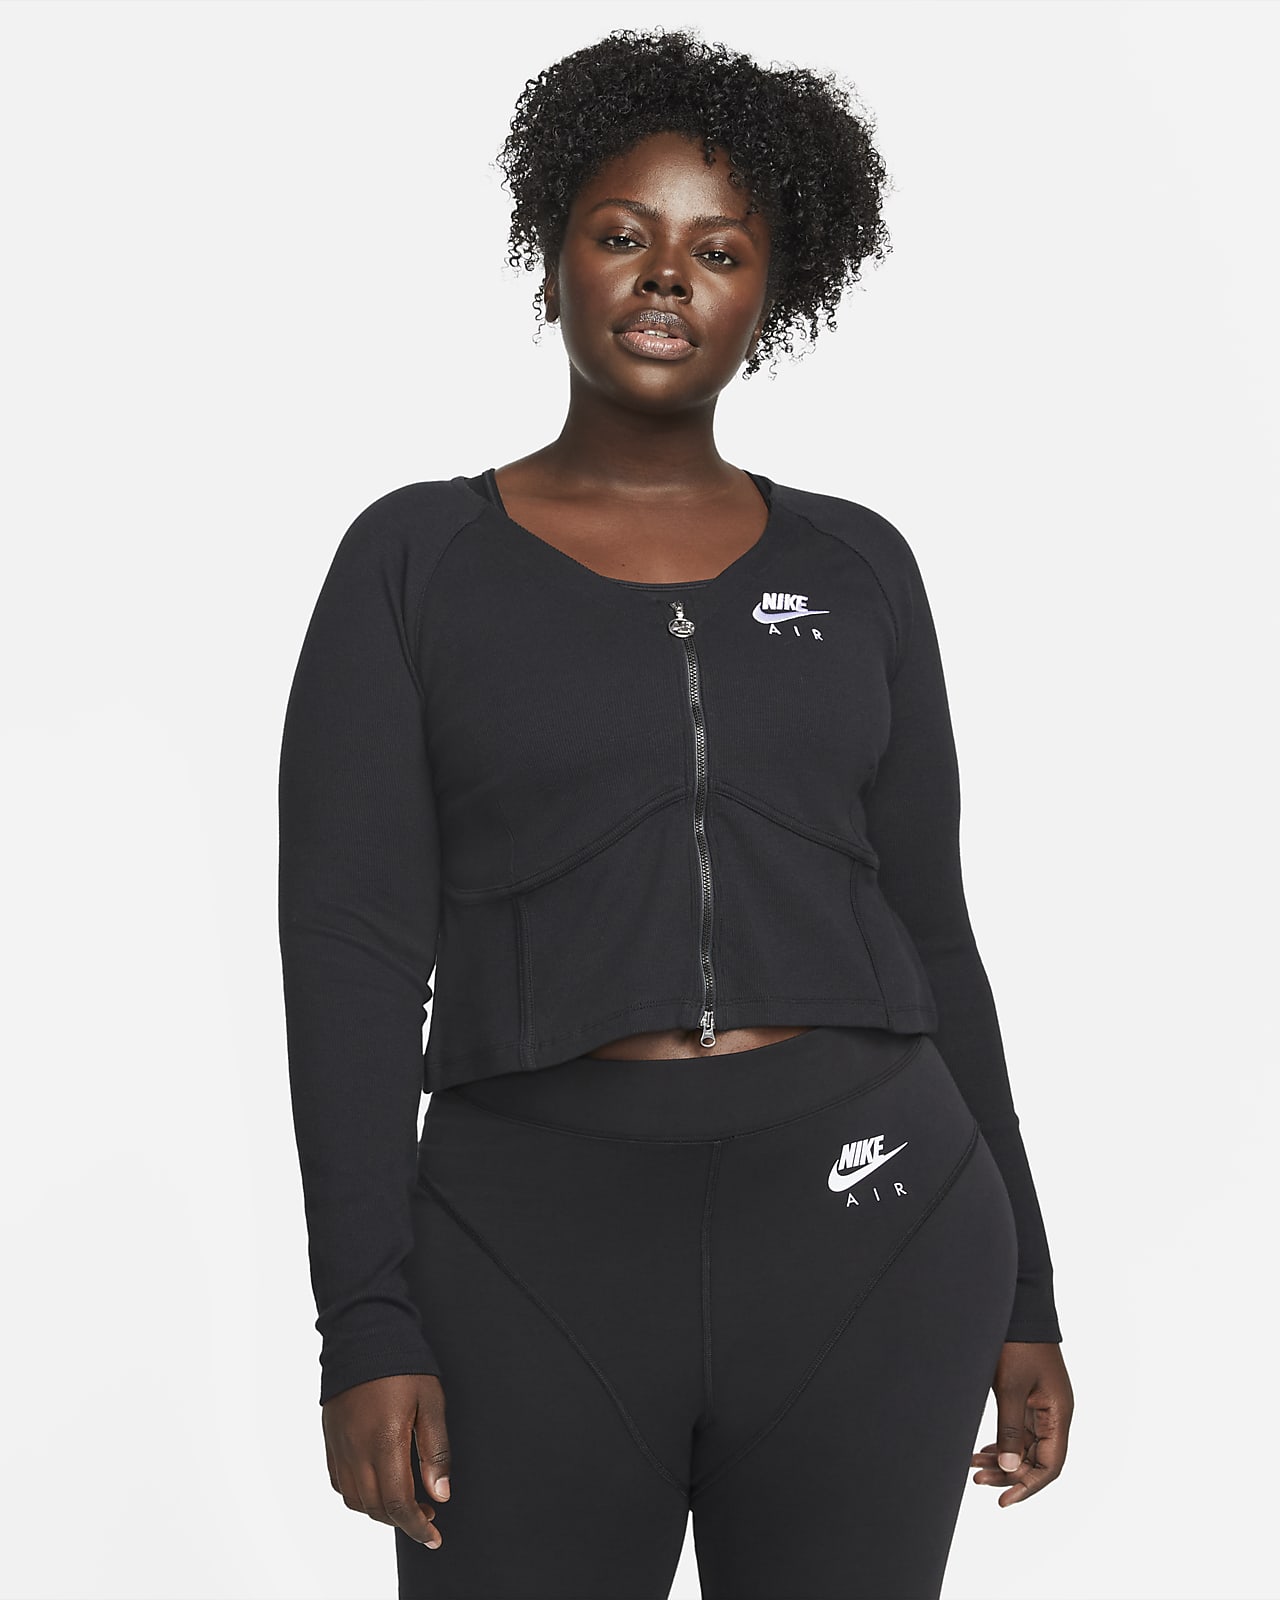 Nike Air geripptes Langarm-Oberteil mit durchgehendem Reißverschluss für Damen (große Größe)